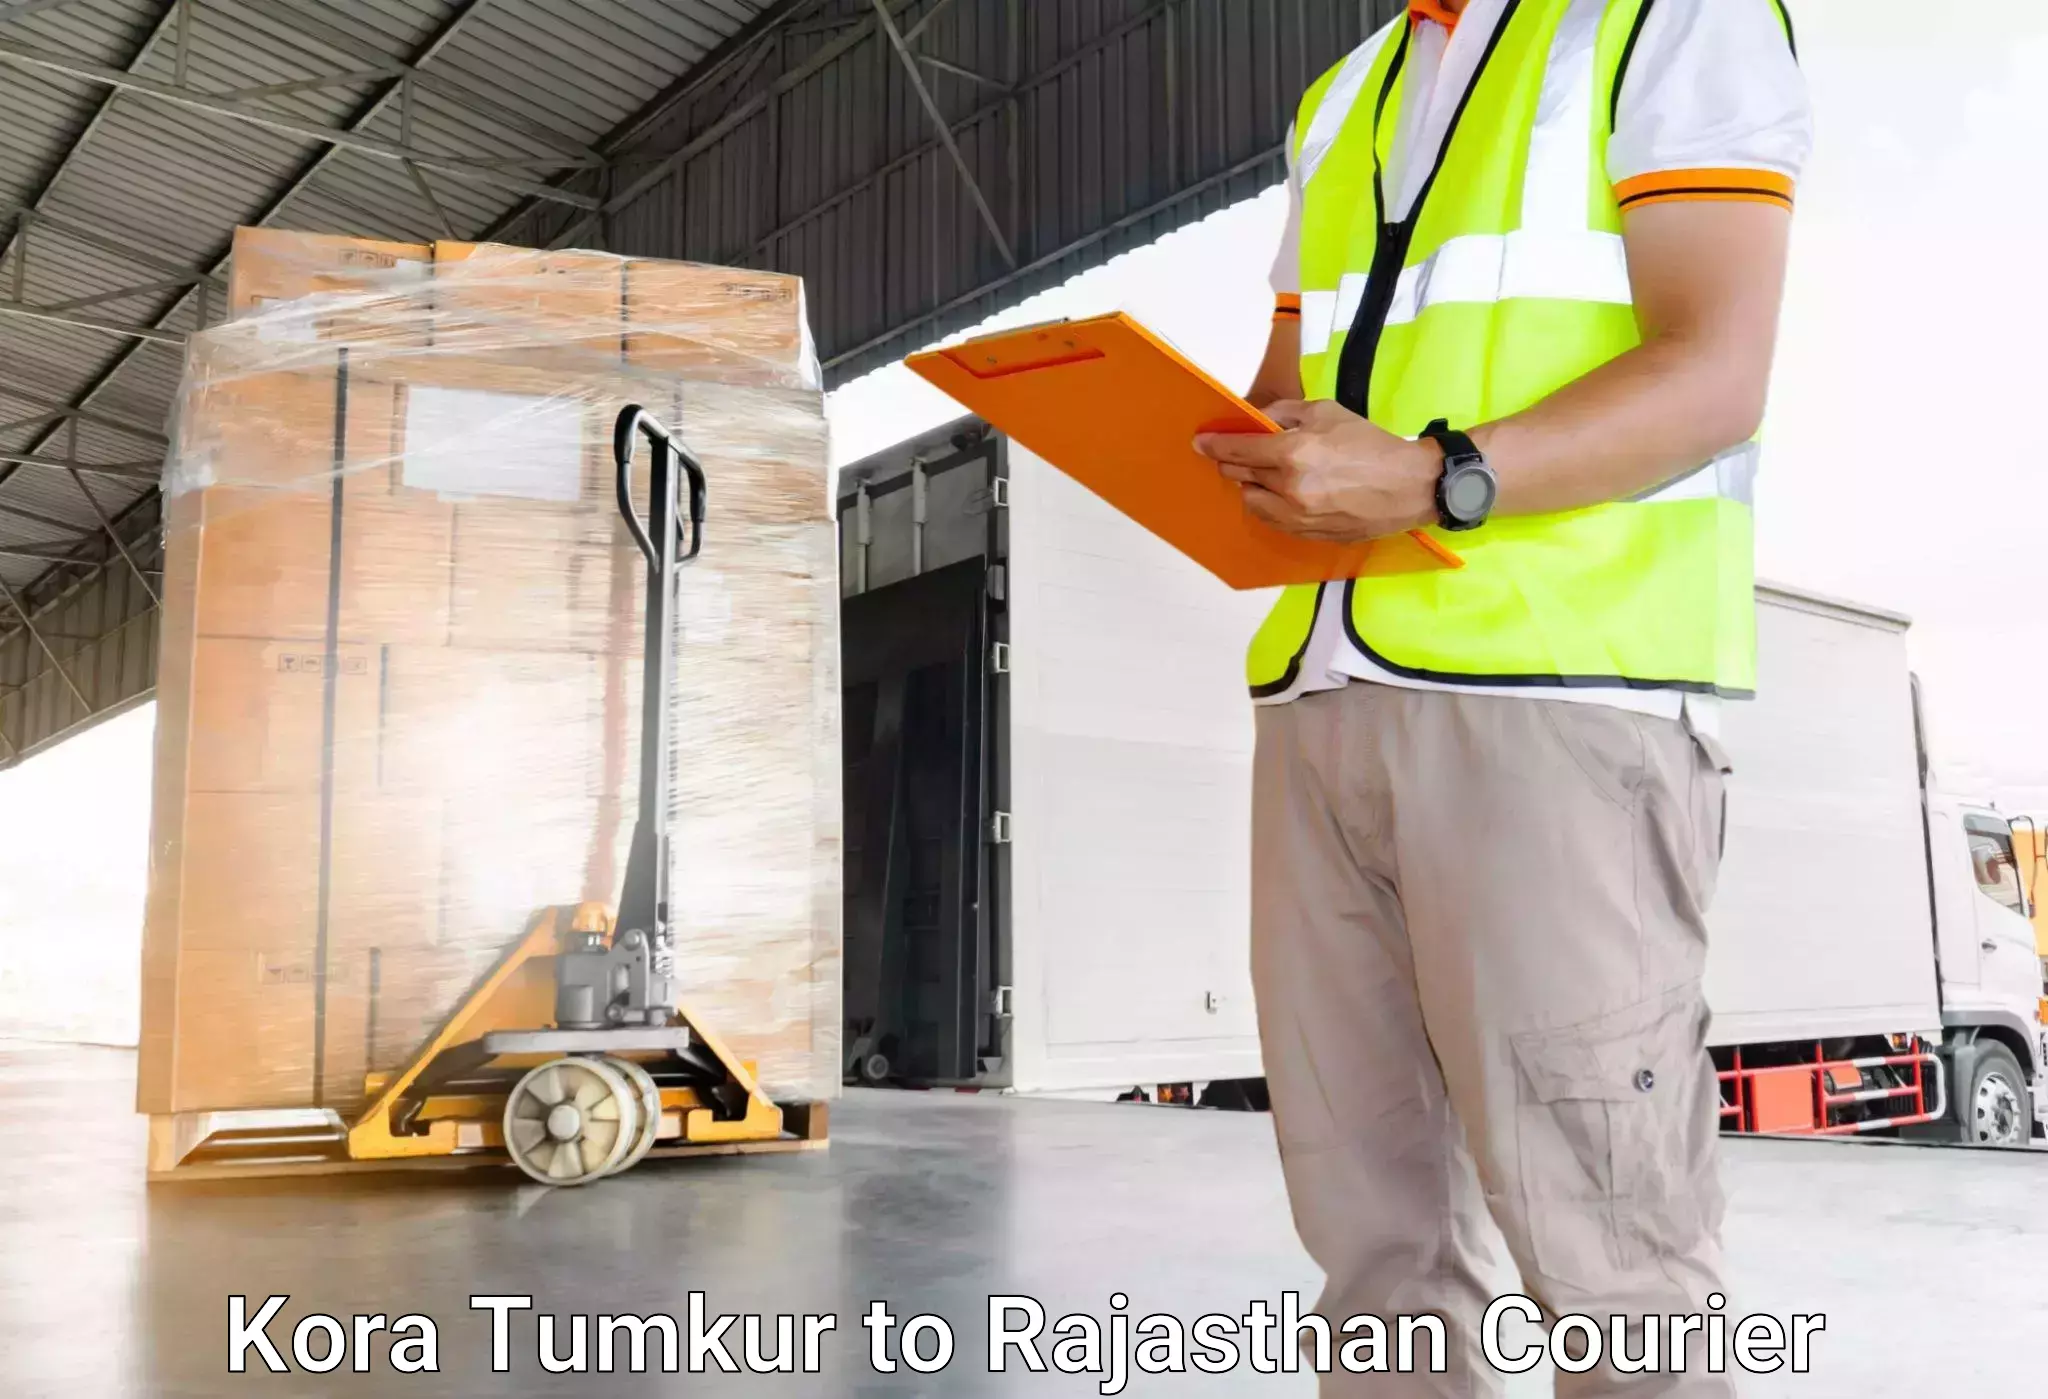 Luggage shipment specialists Kora Tumkur to IIT Jodhpur